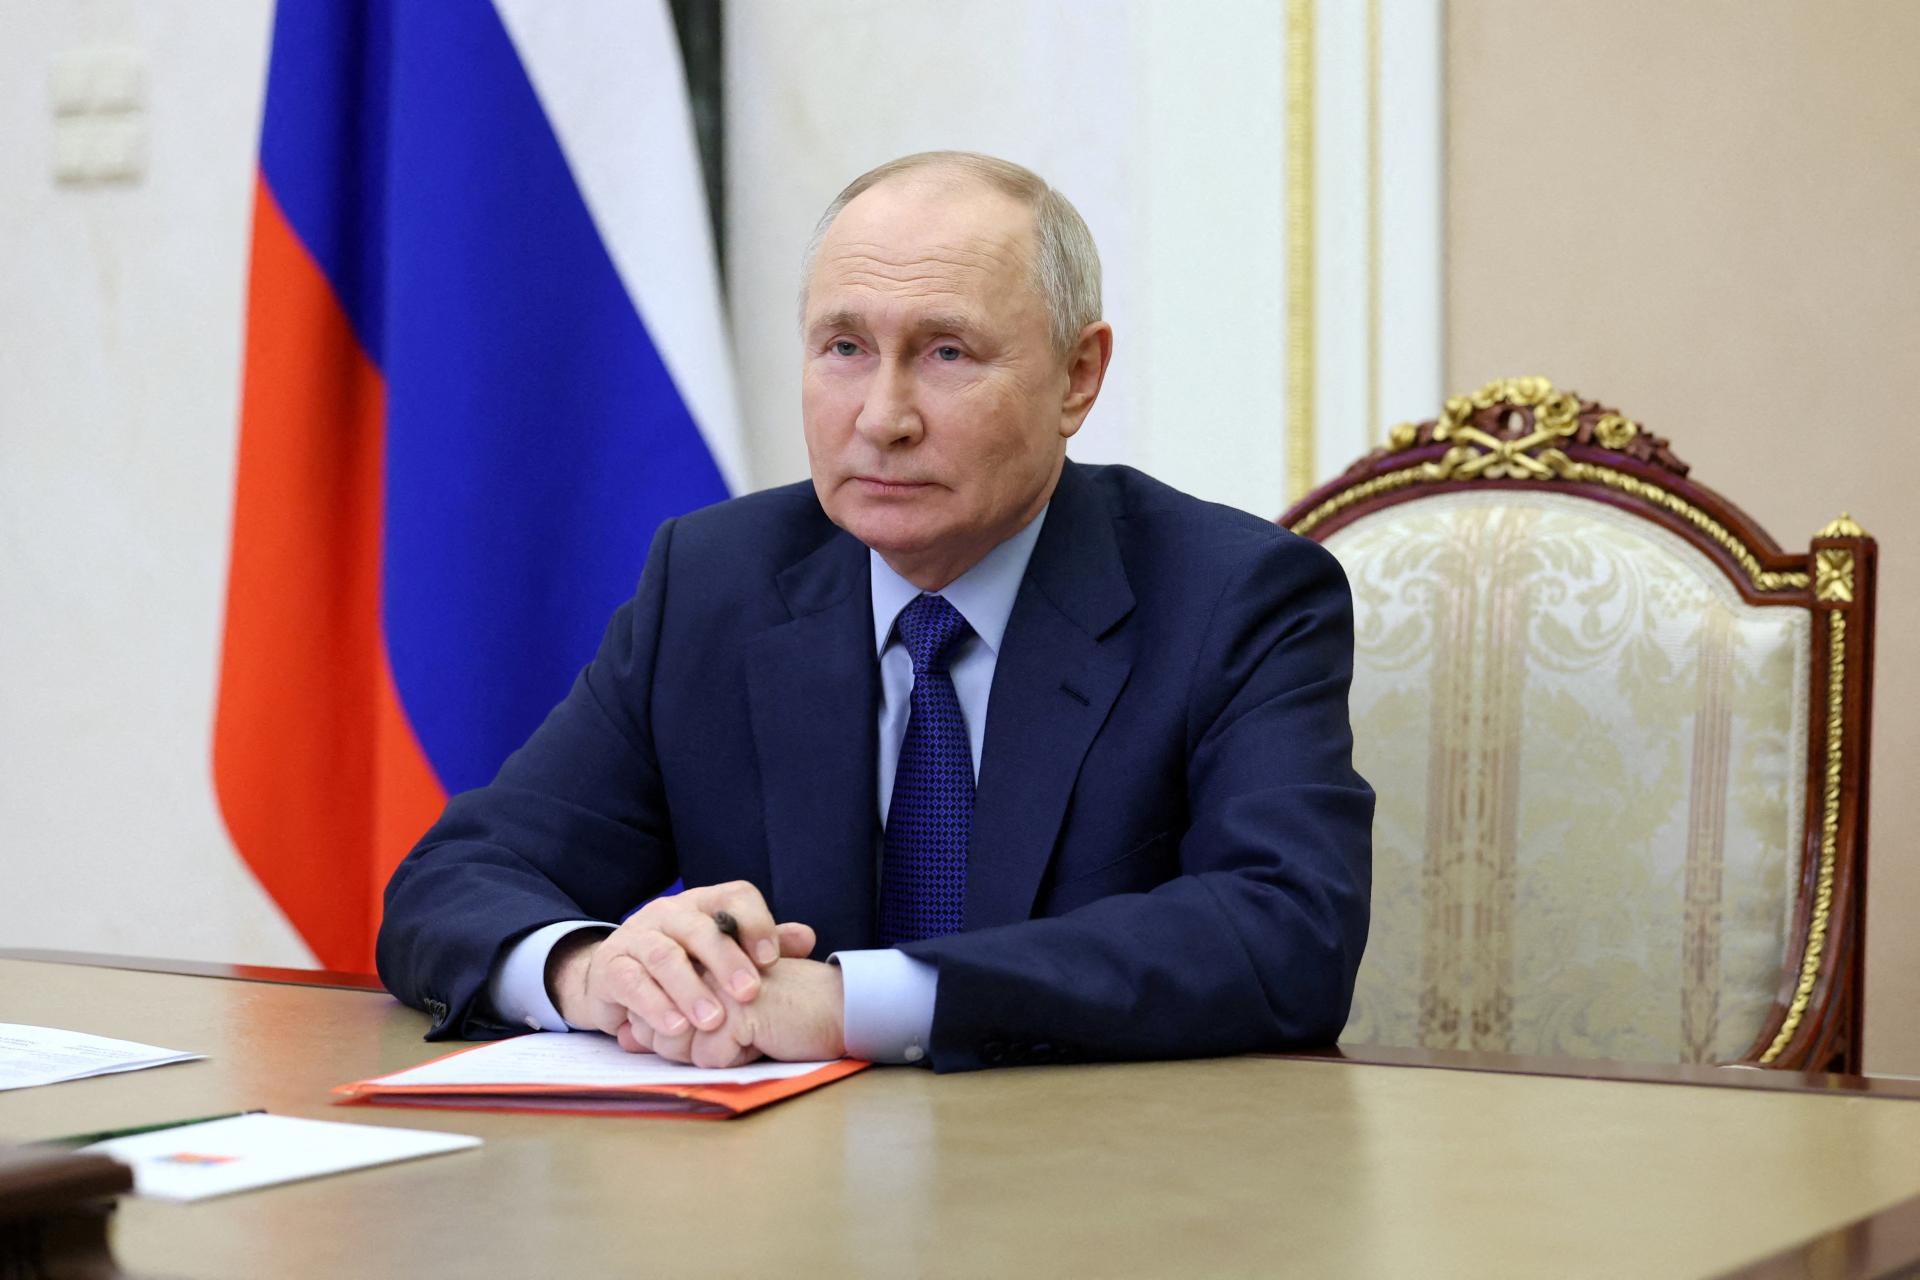 Pešo sa vydal do Moskvy, aby vyhnal Putina. Jakutský šaman zostáva na psychiatrii